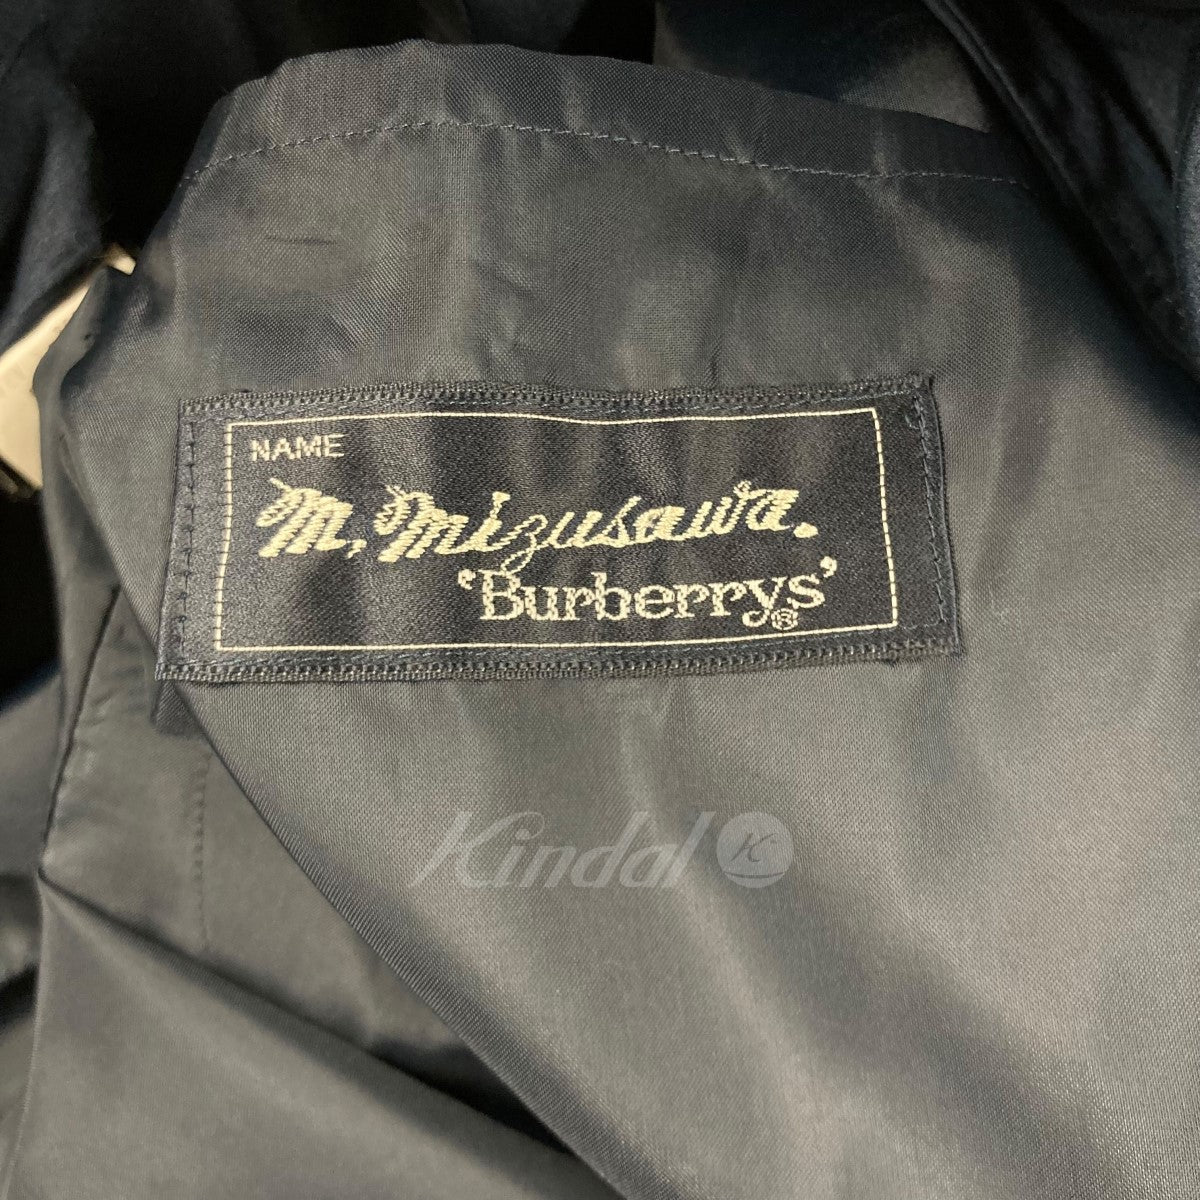 Burberry's(バーバリーズ) ステンカラーコート WRO 50 218 29 ネイビー 